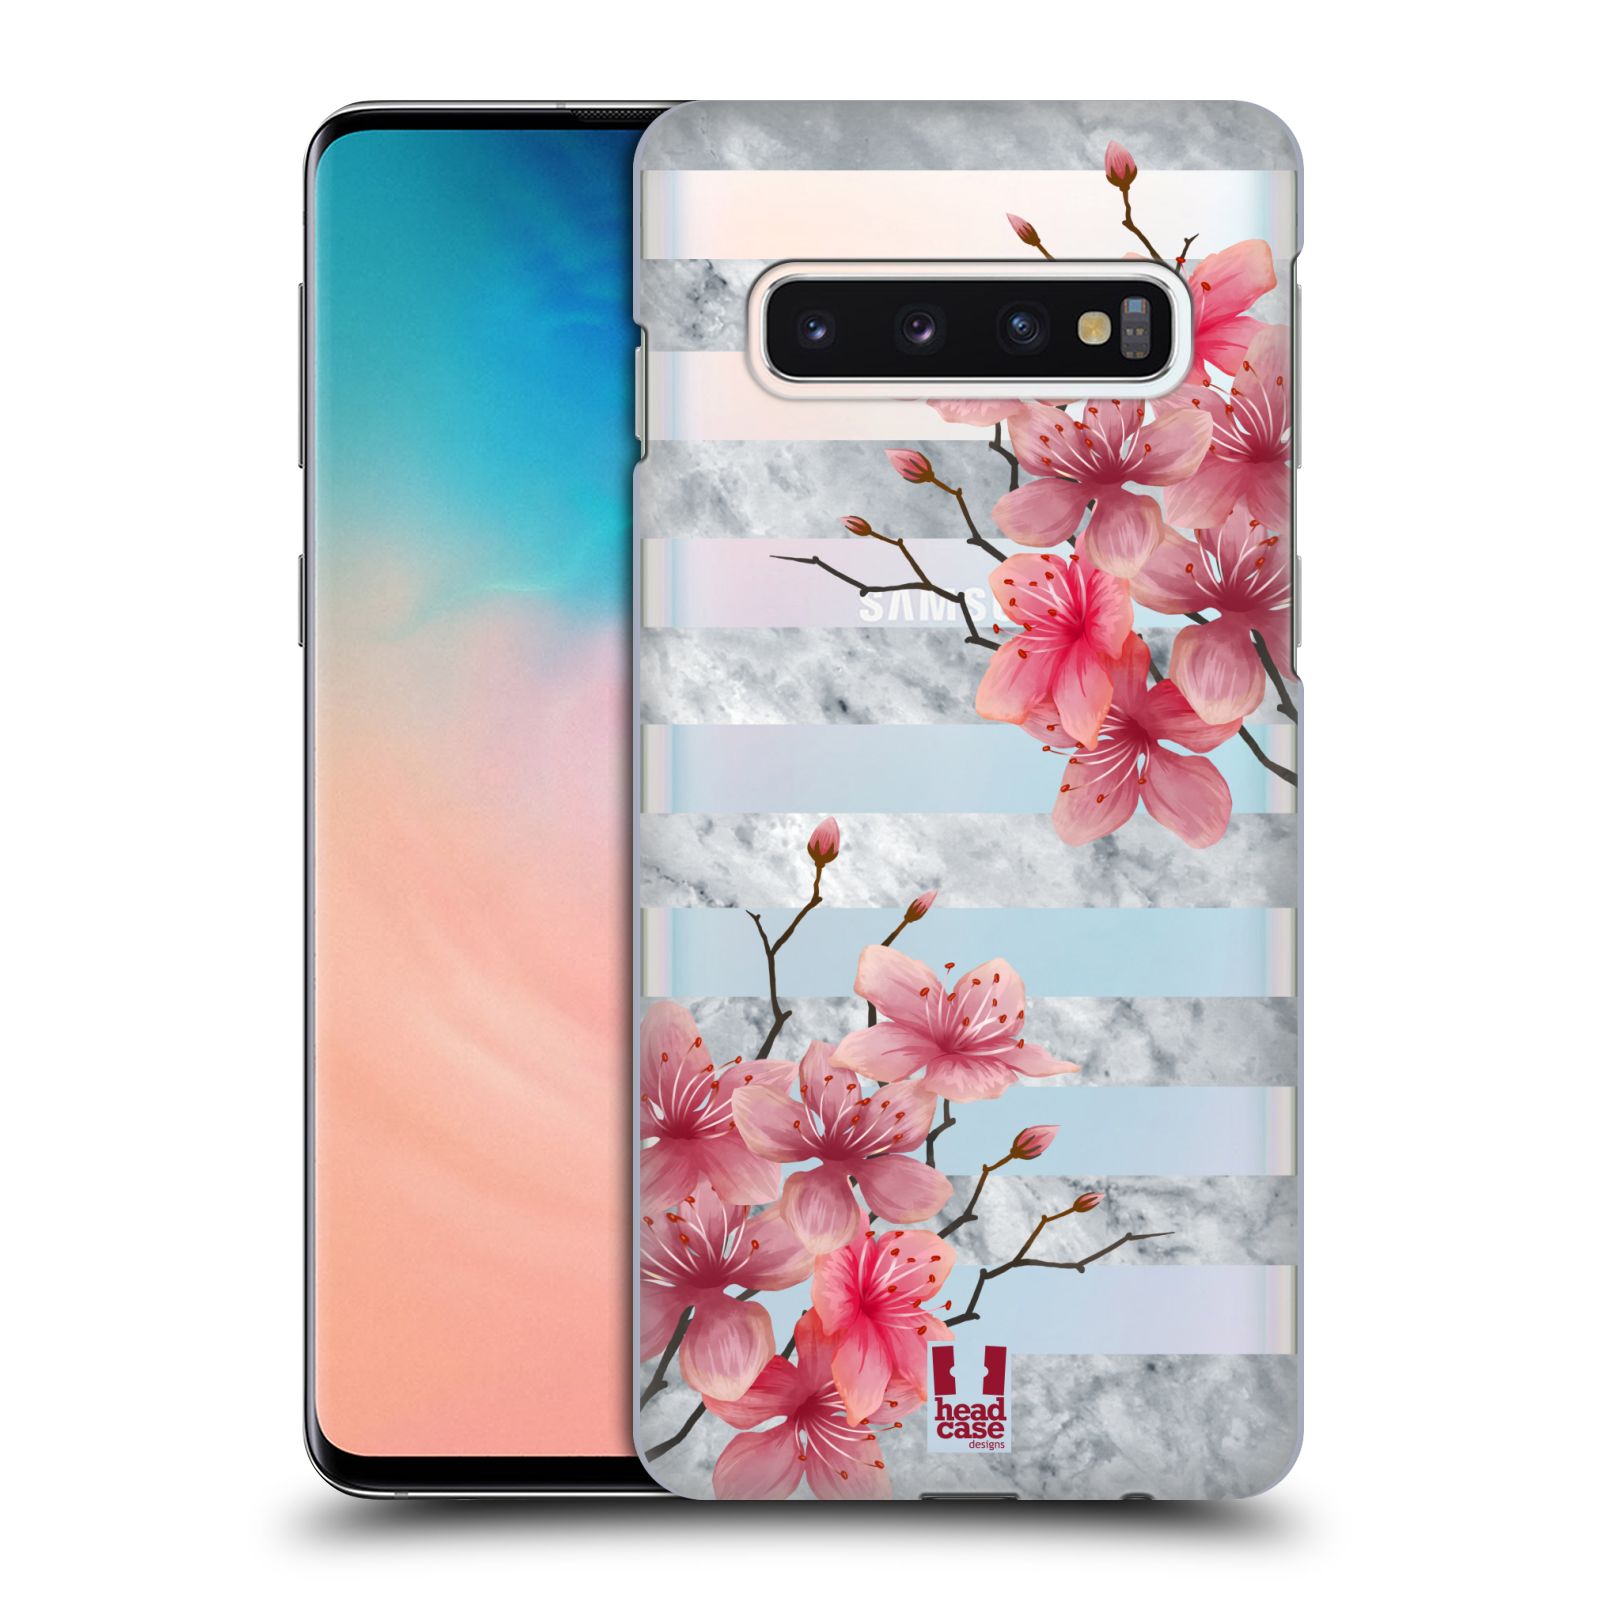 Pouzdro na mobil Samsung Galaxy S10 - HEAD CASE - růžové květy v rozkvětu a mramor